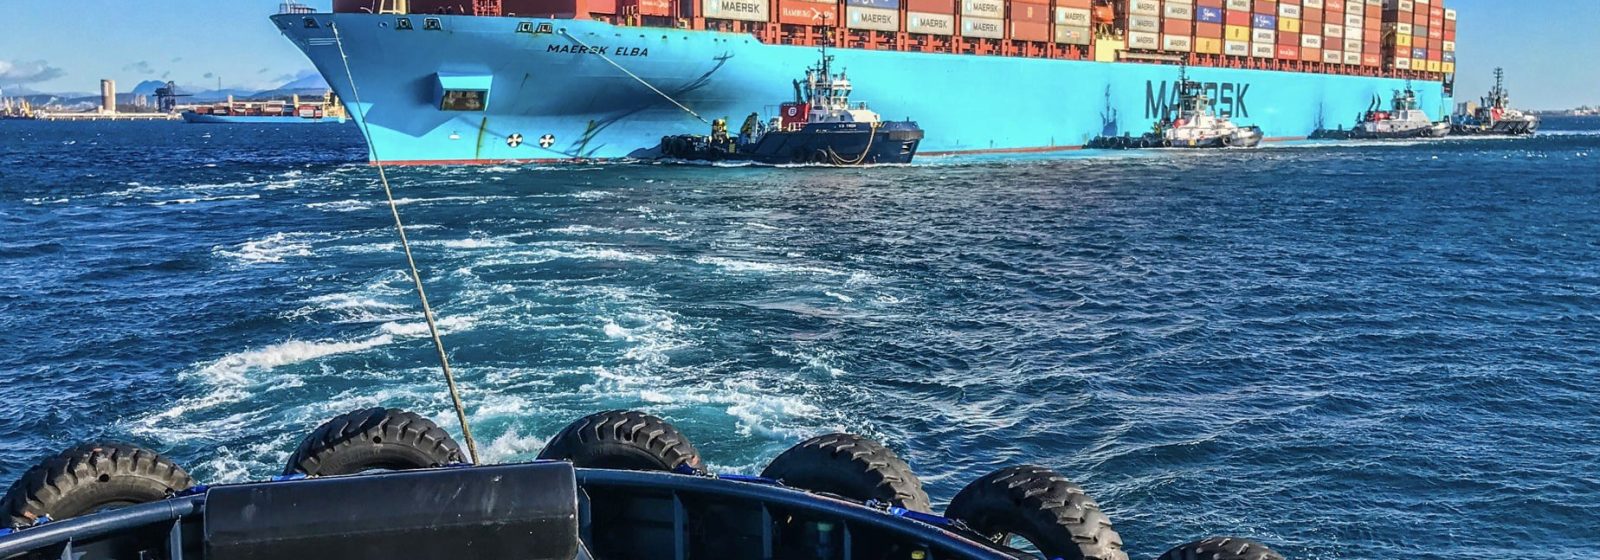 De 'Maersk Elba' (13.568 teu) in Algeciras